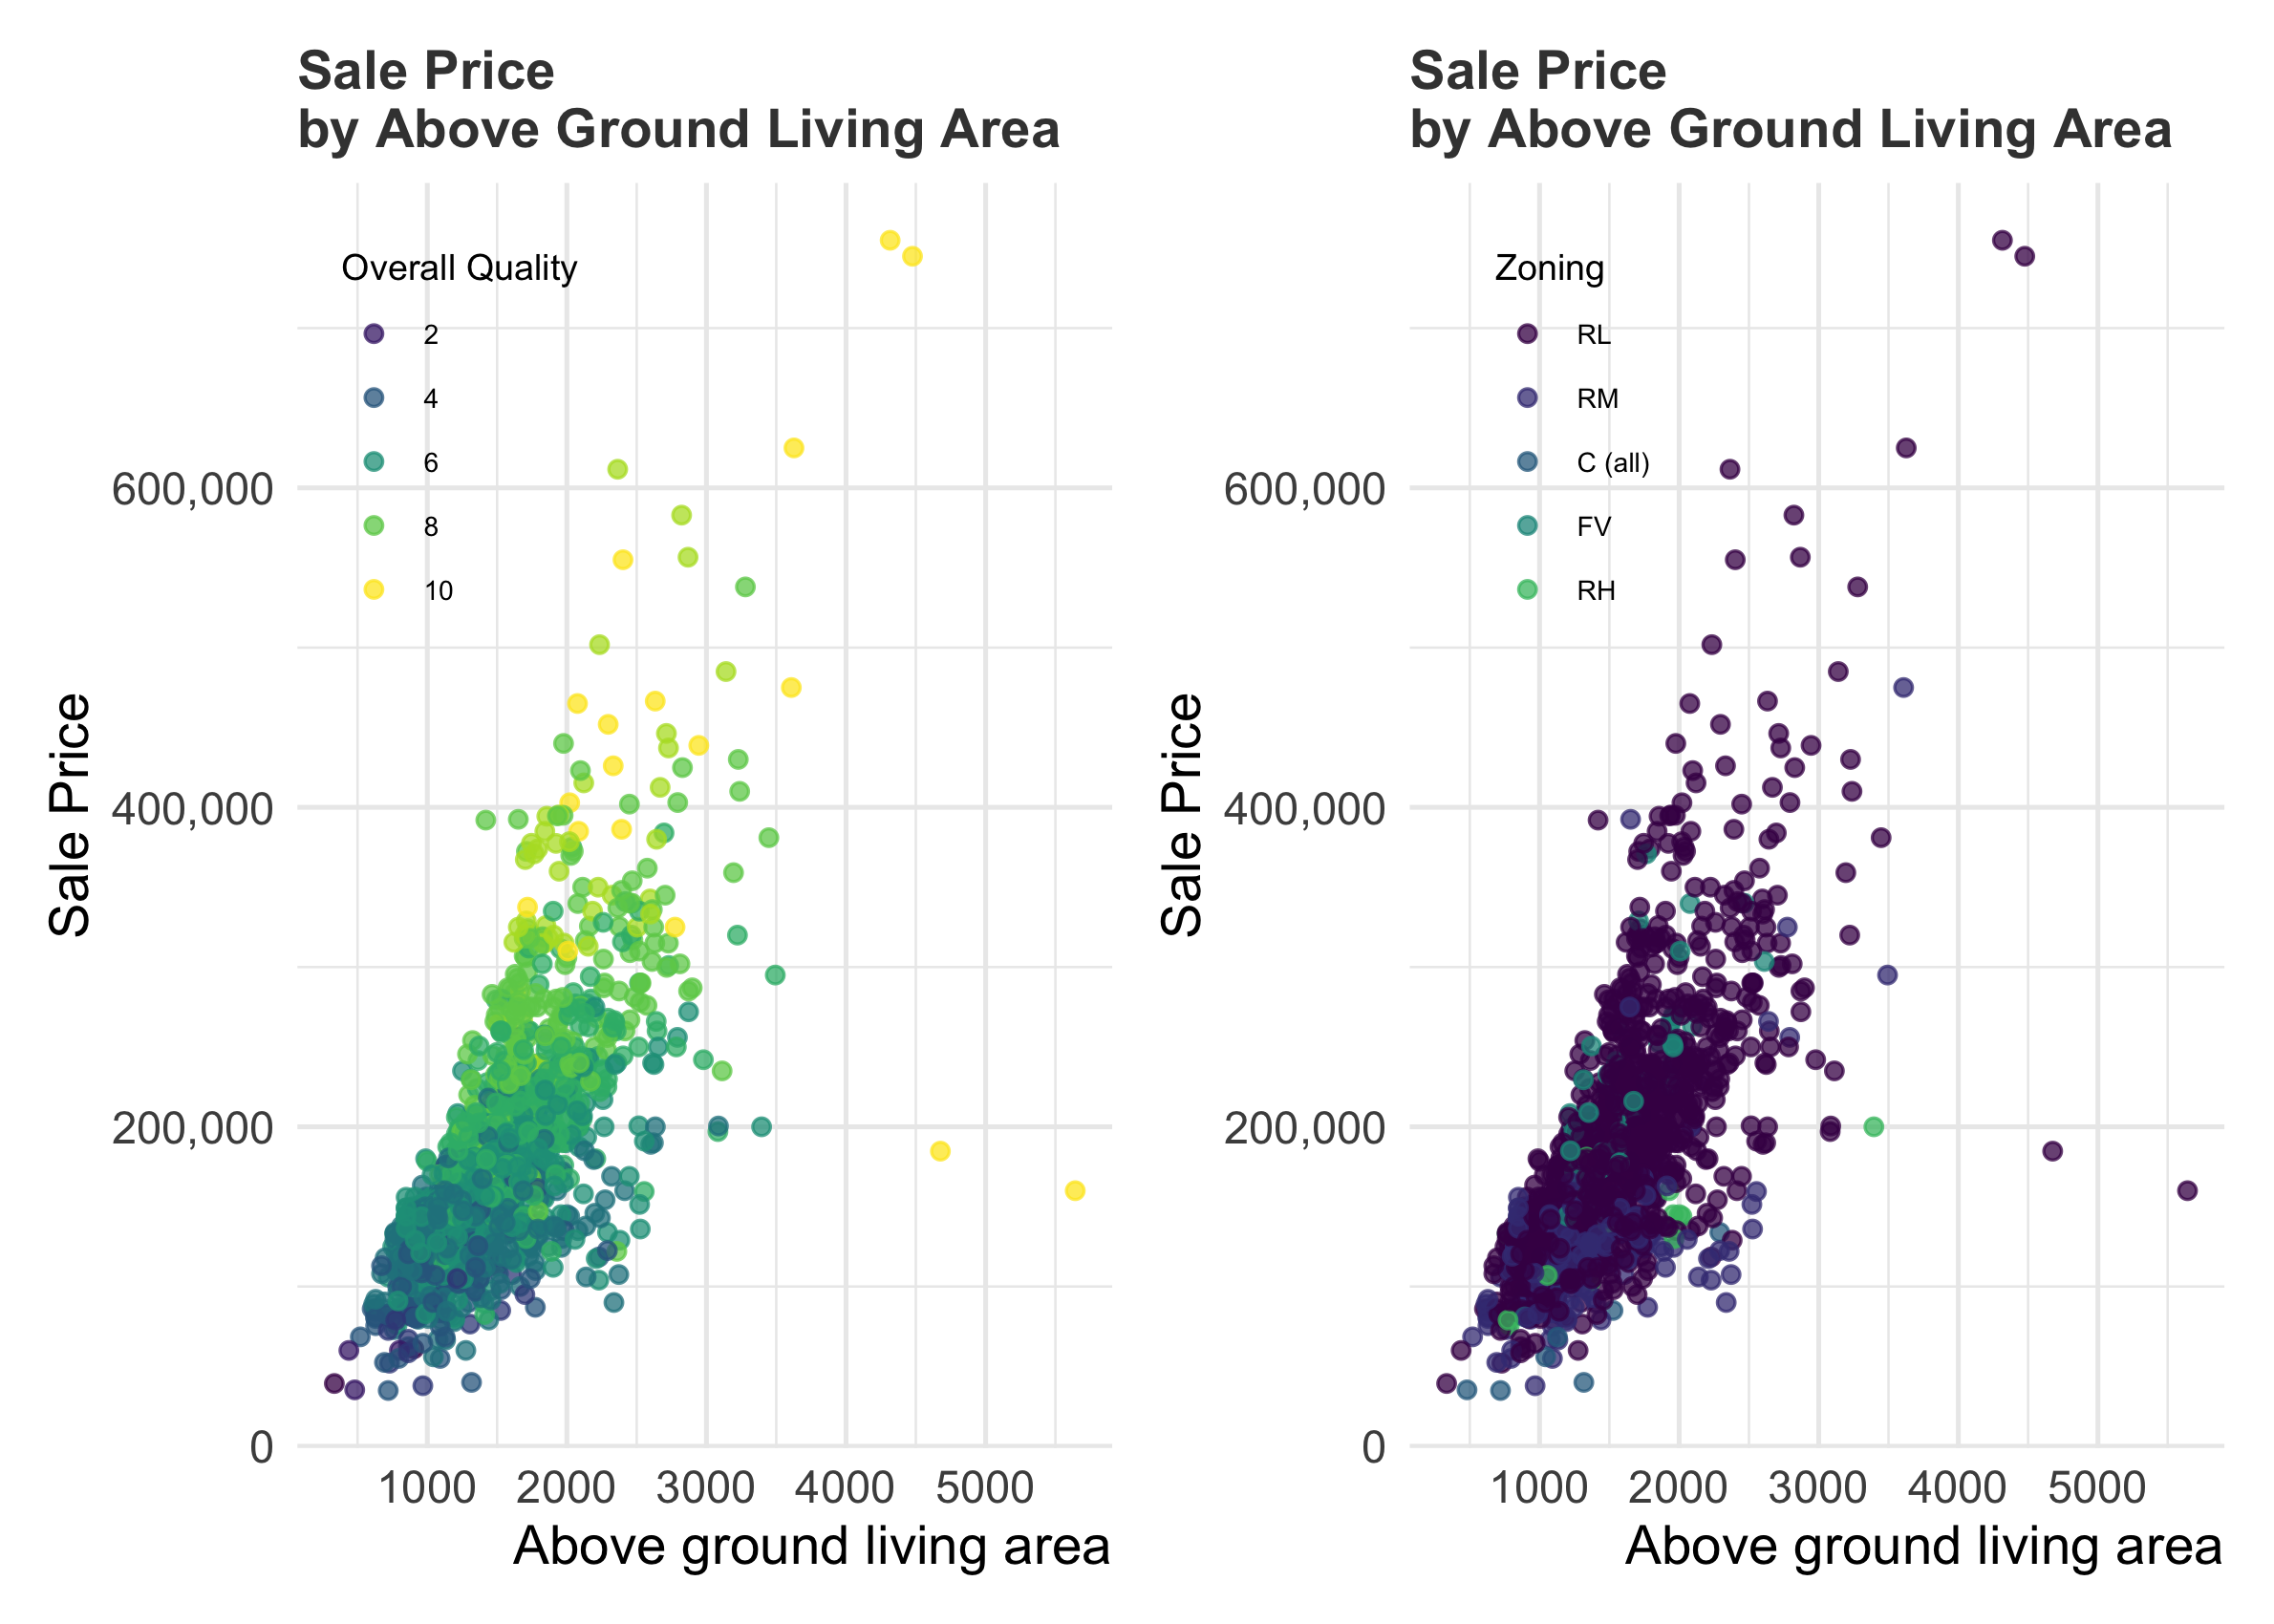 Giá nhà đất: Những diễn biến về giá nhà đất luôn được quan tâm hàng đầu. Bạn đang muốn biết giá nhà đất tại địa phương của mình có thay đổi trong thời gian gần đây không? Hãy xem ảnh và khám phá những thông tin mới nhất về giá nhà đất tại khu vực của bạn.